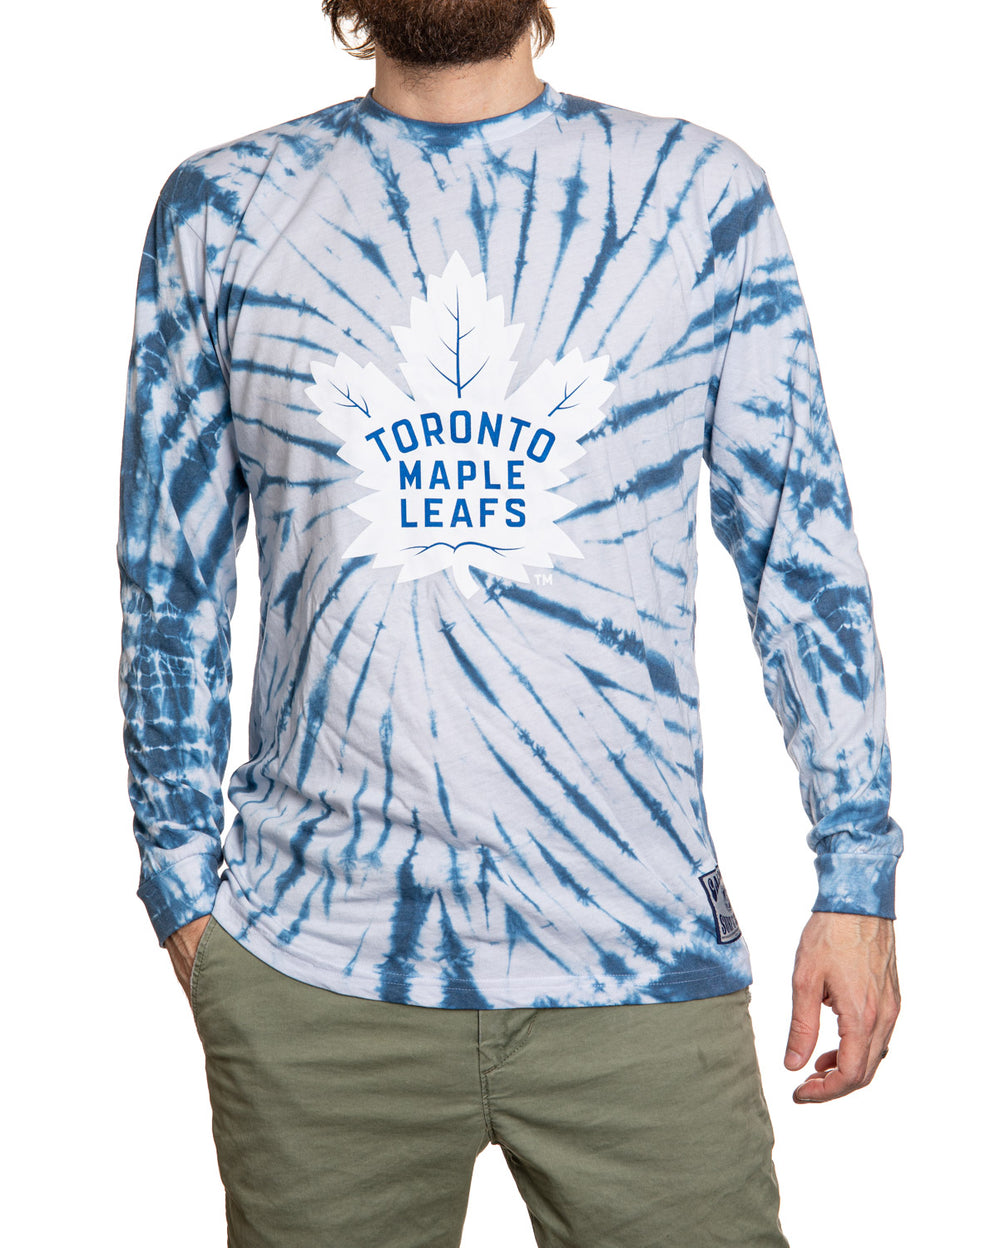 Toronto Maple Leafs Spiral Tie Dye Longsleeve Shirt